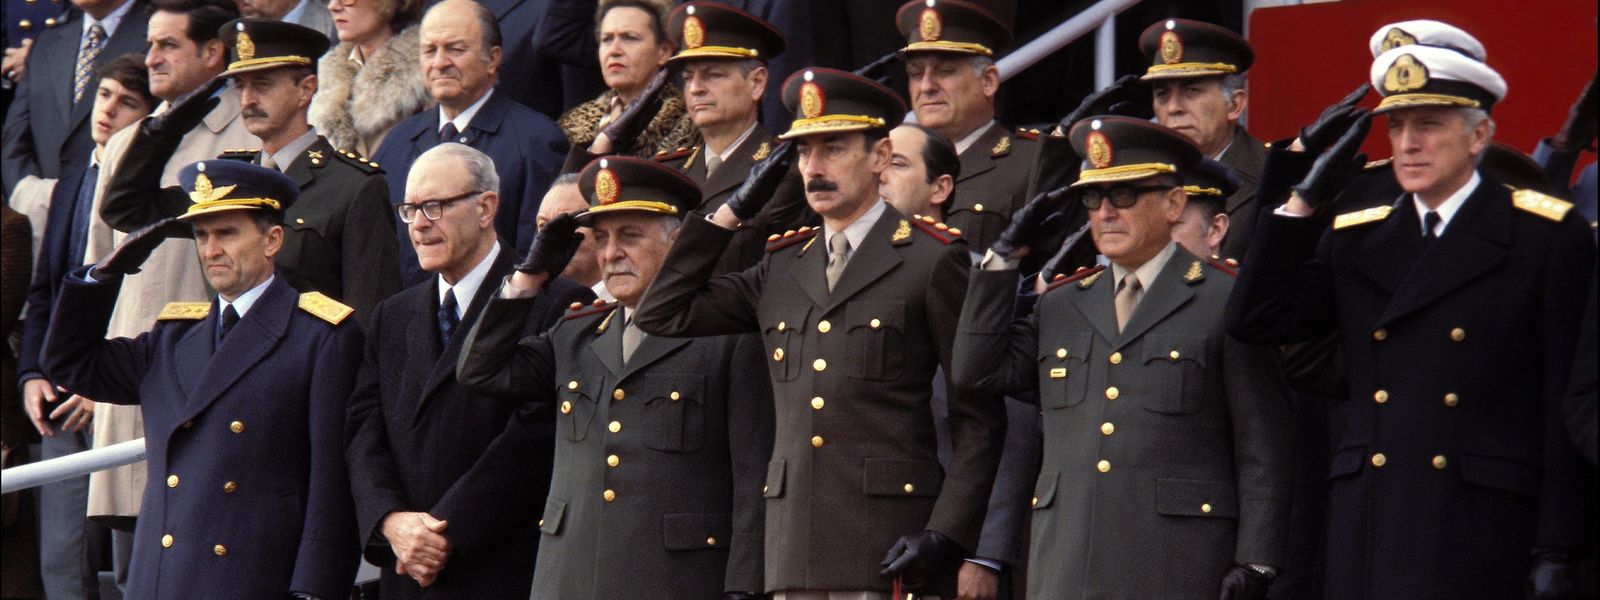 Tod und Spiele: Vor 43 Jahren inszeniert die argentinische Militärjunta die Fußball-WM als Heile-Welt-Spektakel. 